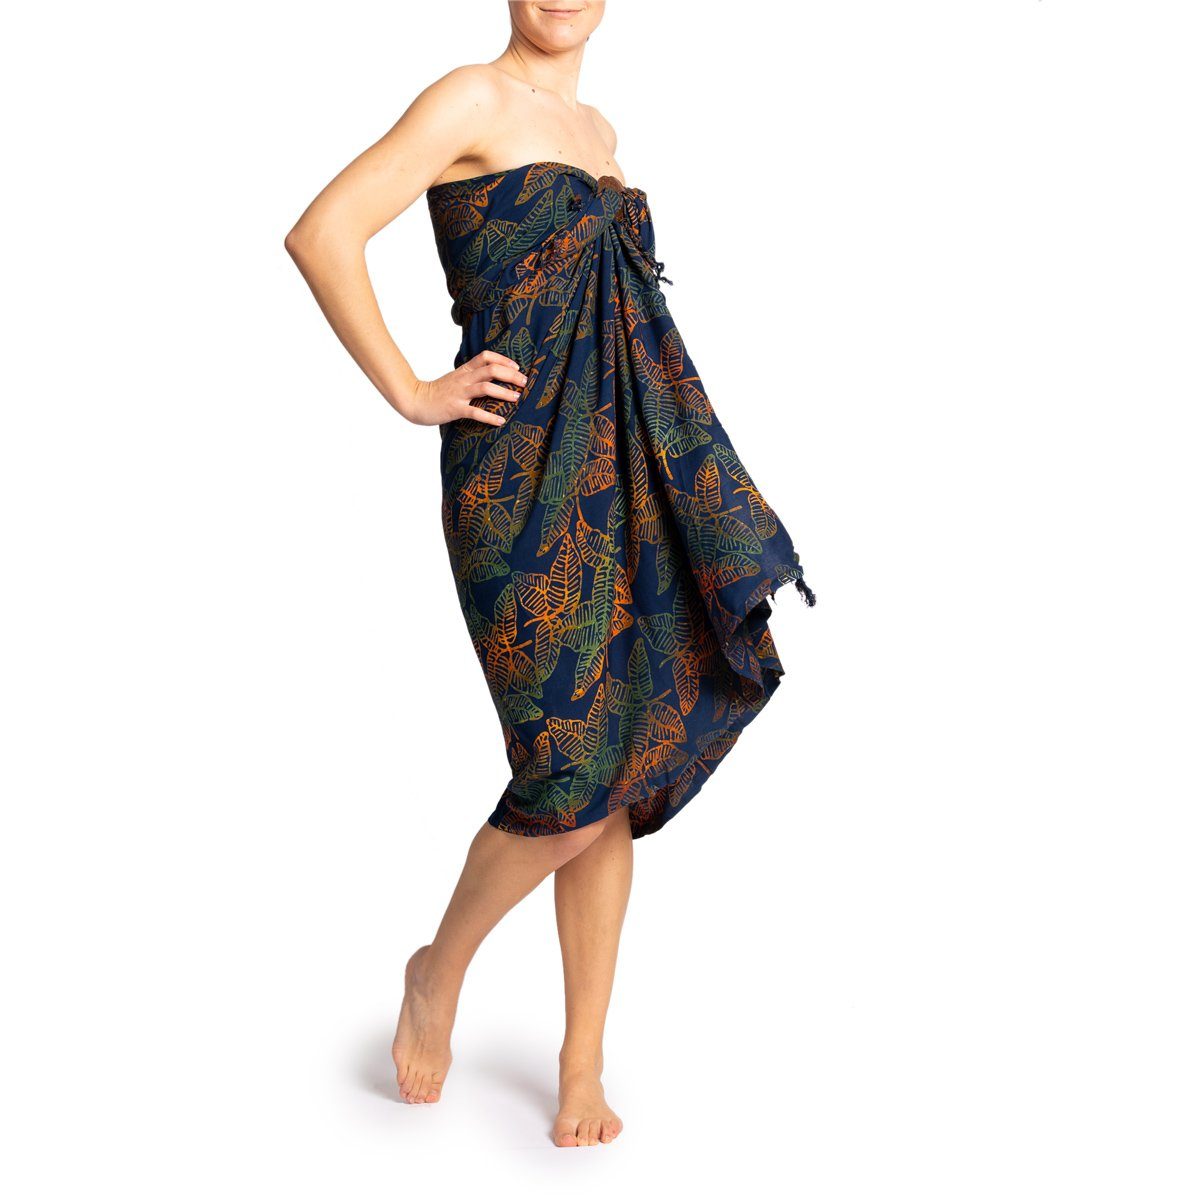 PANASIAM Pareo Sarong Wachsbatik dunkle Designs aus hochwertiger Viskose Strandtuch, Strandkleid Bikini Cover-up Tuch für den Strand Schultertuch Halstuch B808 dark leaf